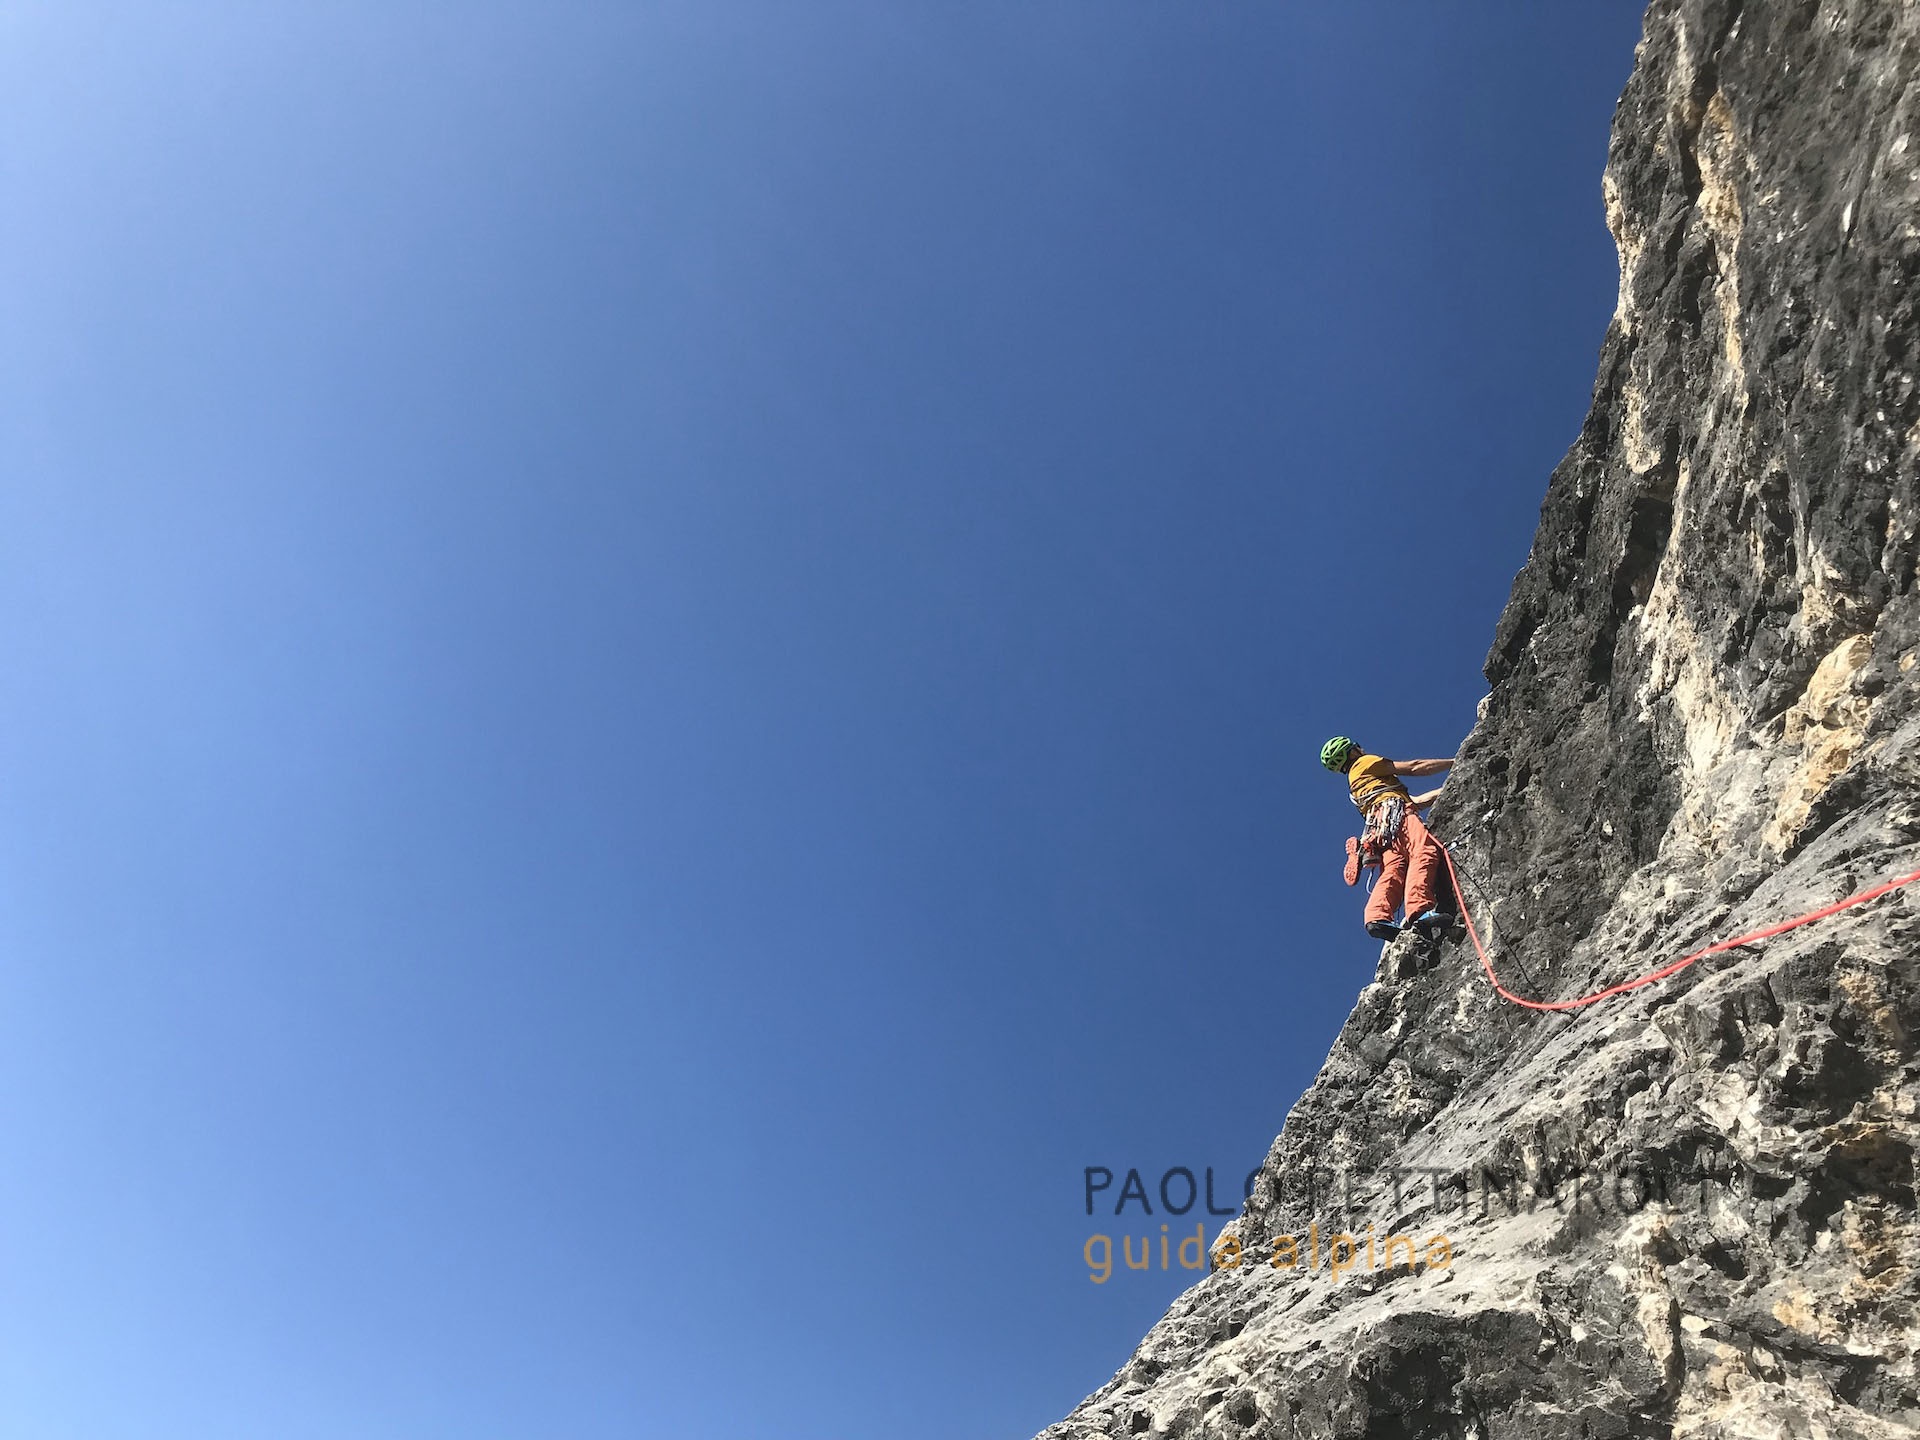 dolomiti - 5 di 6-arrampicata_paolo pettinaroli guida alpina